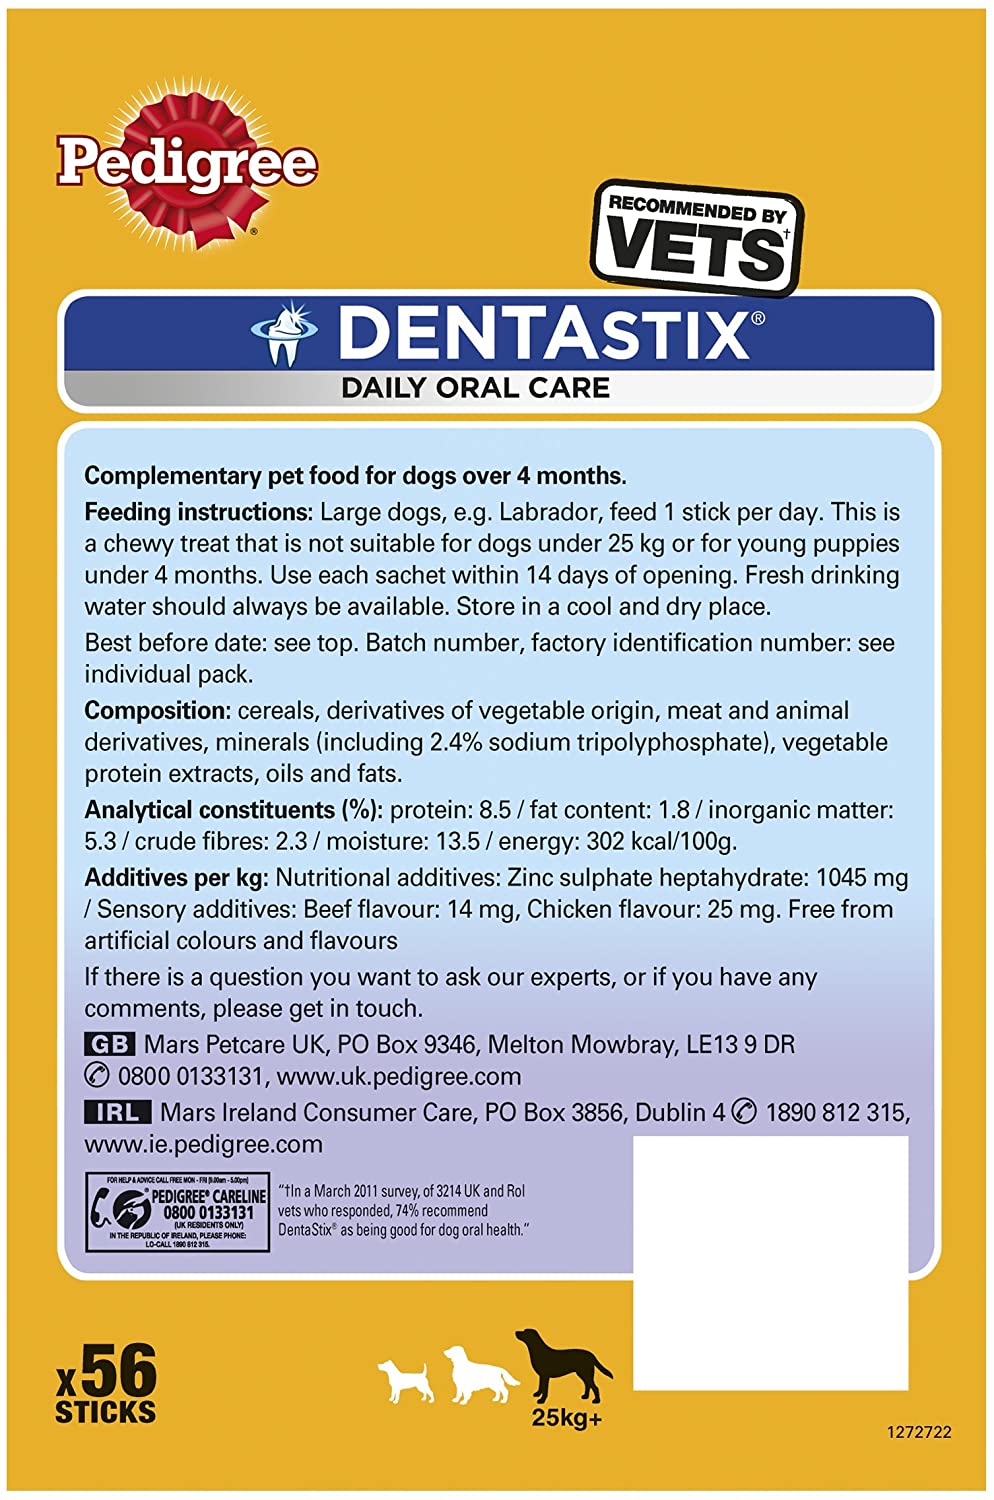  Pedigree Dentastix Diario Oral Cuidado Dental Masticables, GRANDE PERRO 56 palitos, pack de 1 